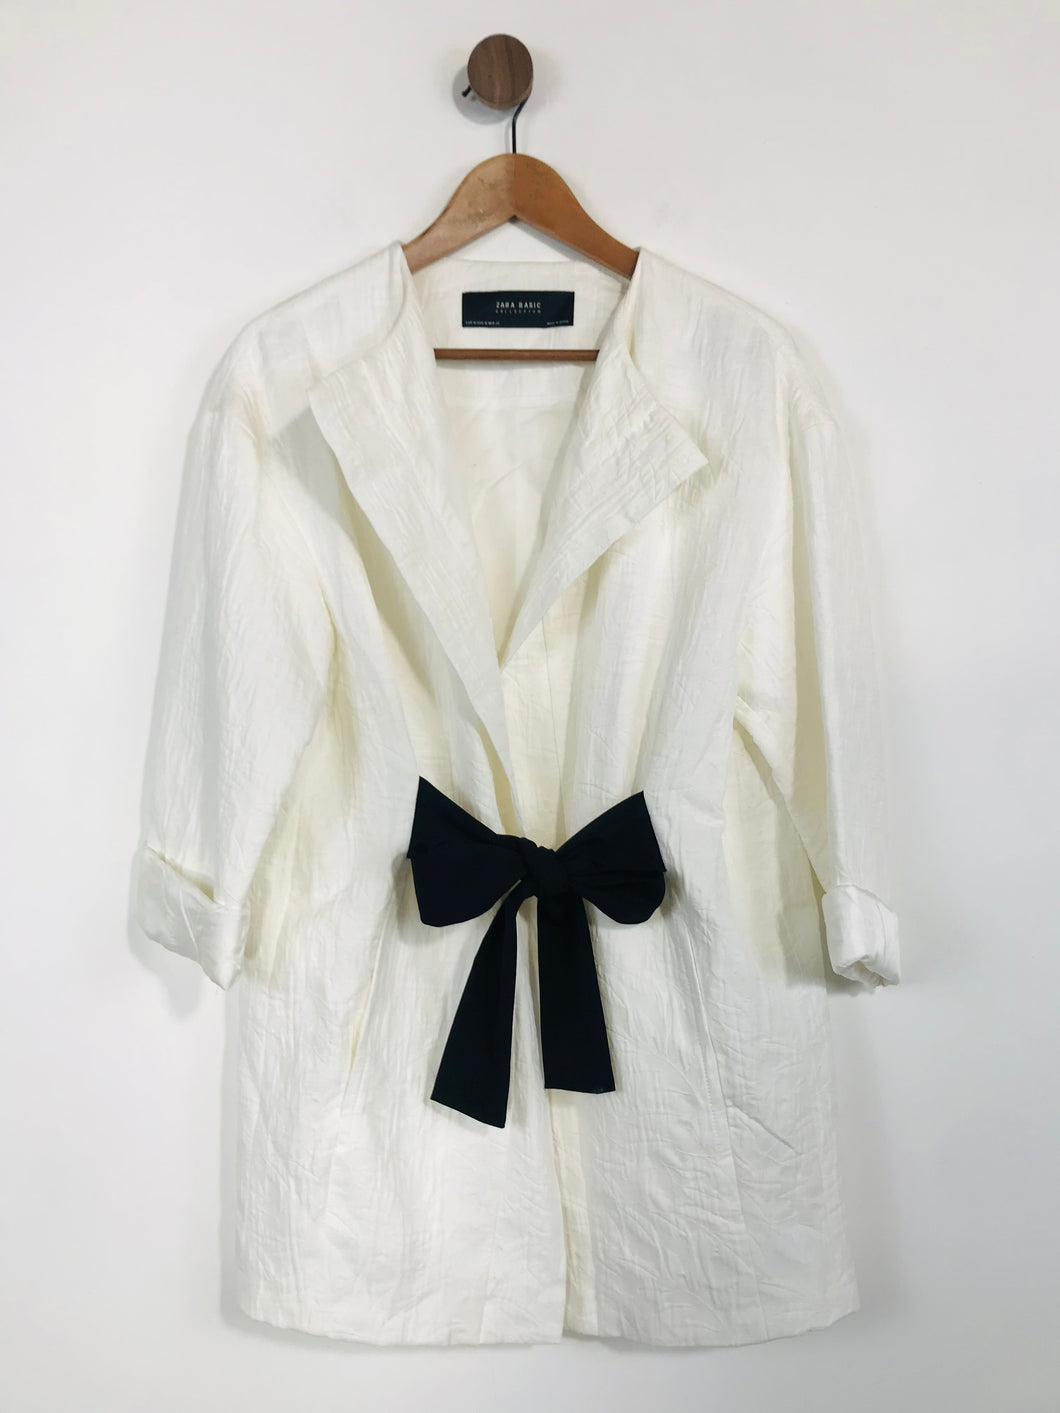 Zara Women's Collarless Belted Overcoat Coat | M UK10-12 | White